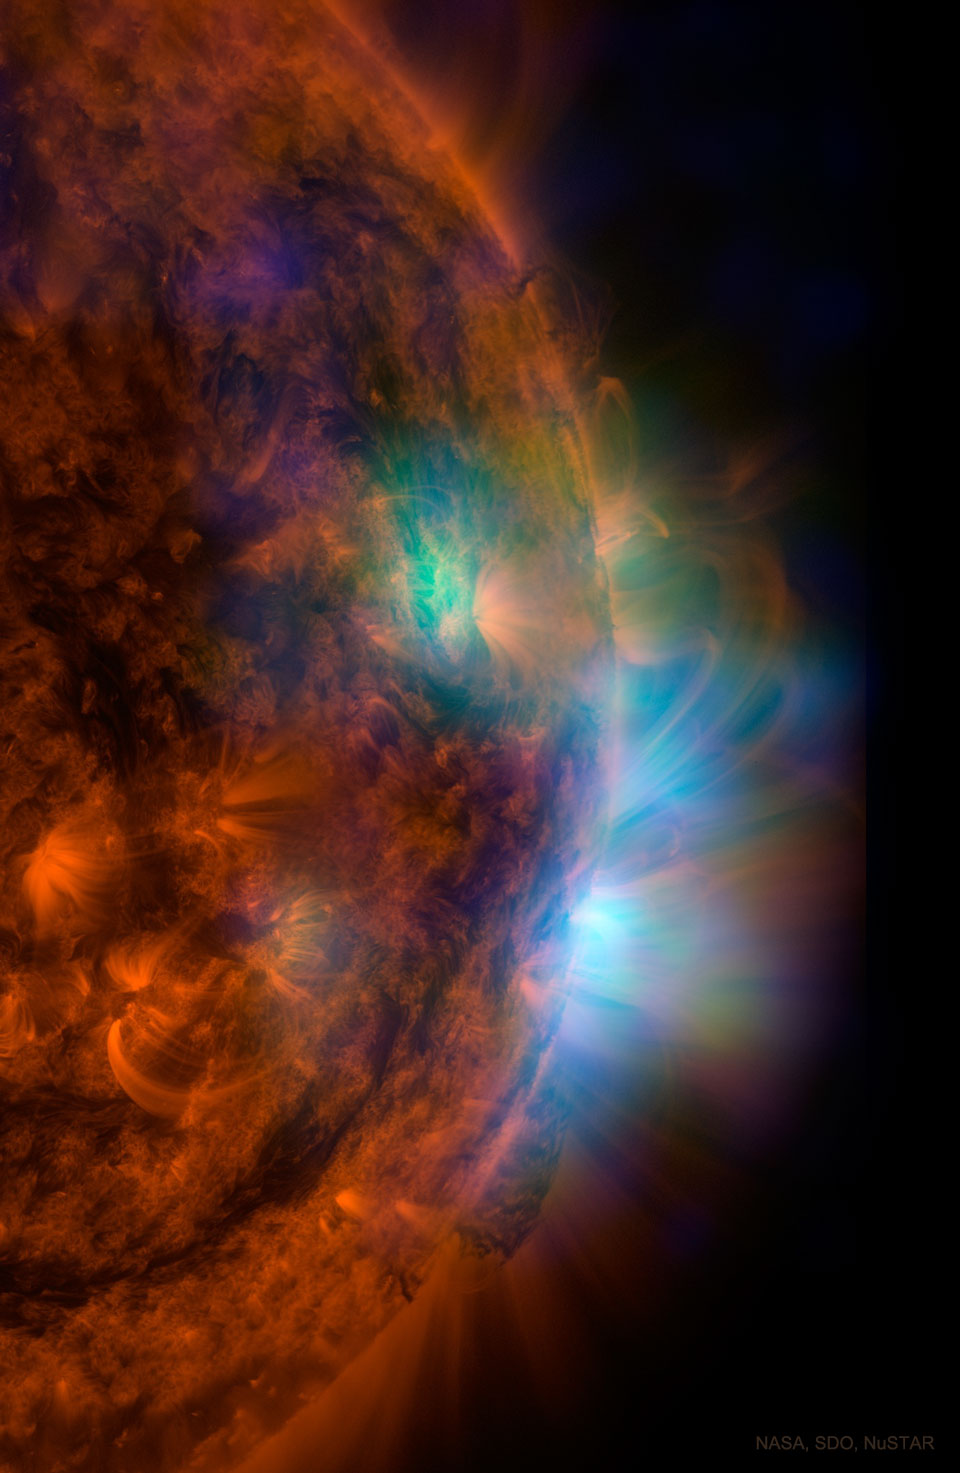 Sonne in UV-Licht und Röntgenlicht. Bilder des Röntgensatelliten Nuclear Spectroscopic Telescope Array NuSTAR liefern Hinweise, warum die Zonen über Sonnenflecken so heiß sind.